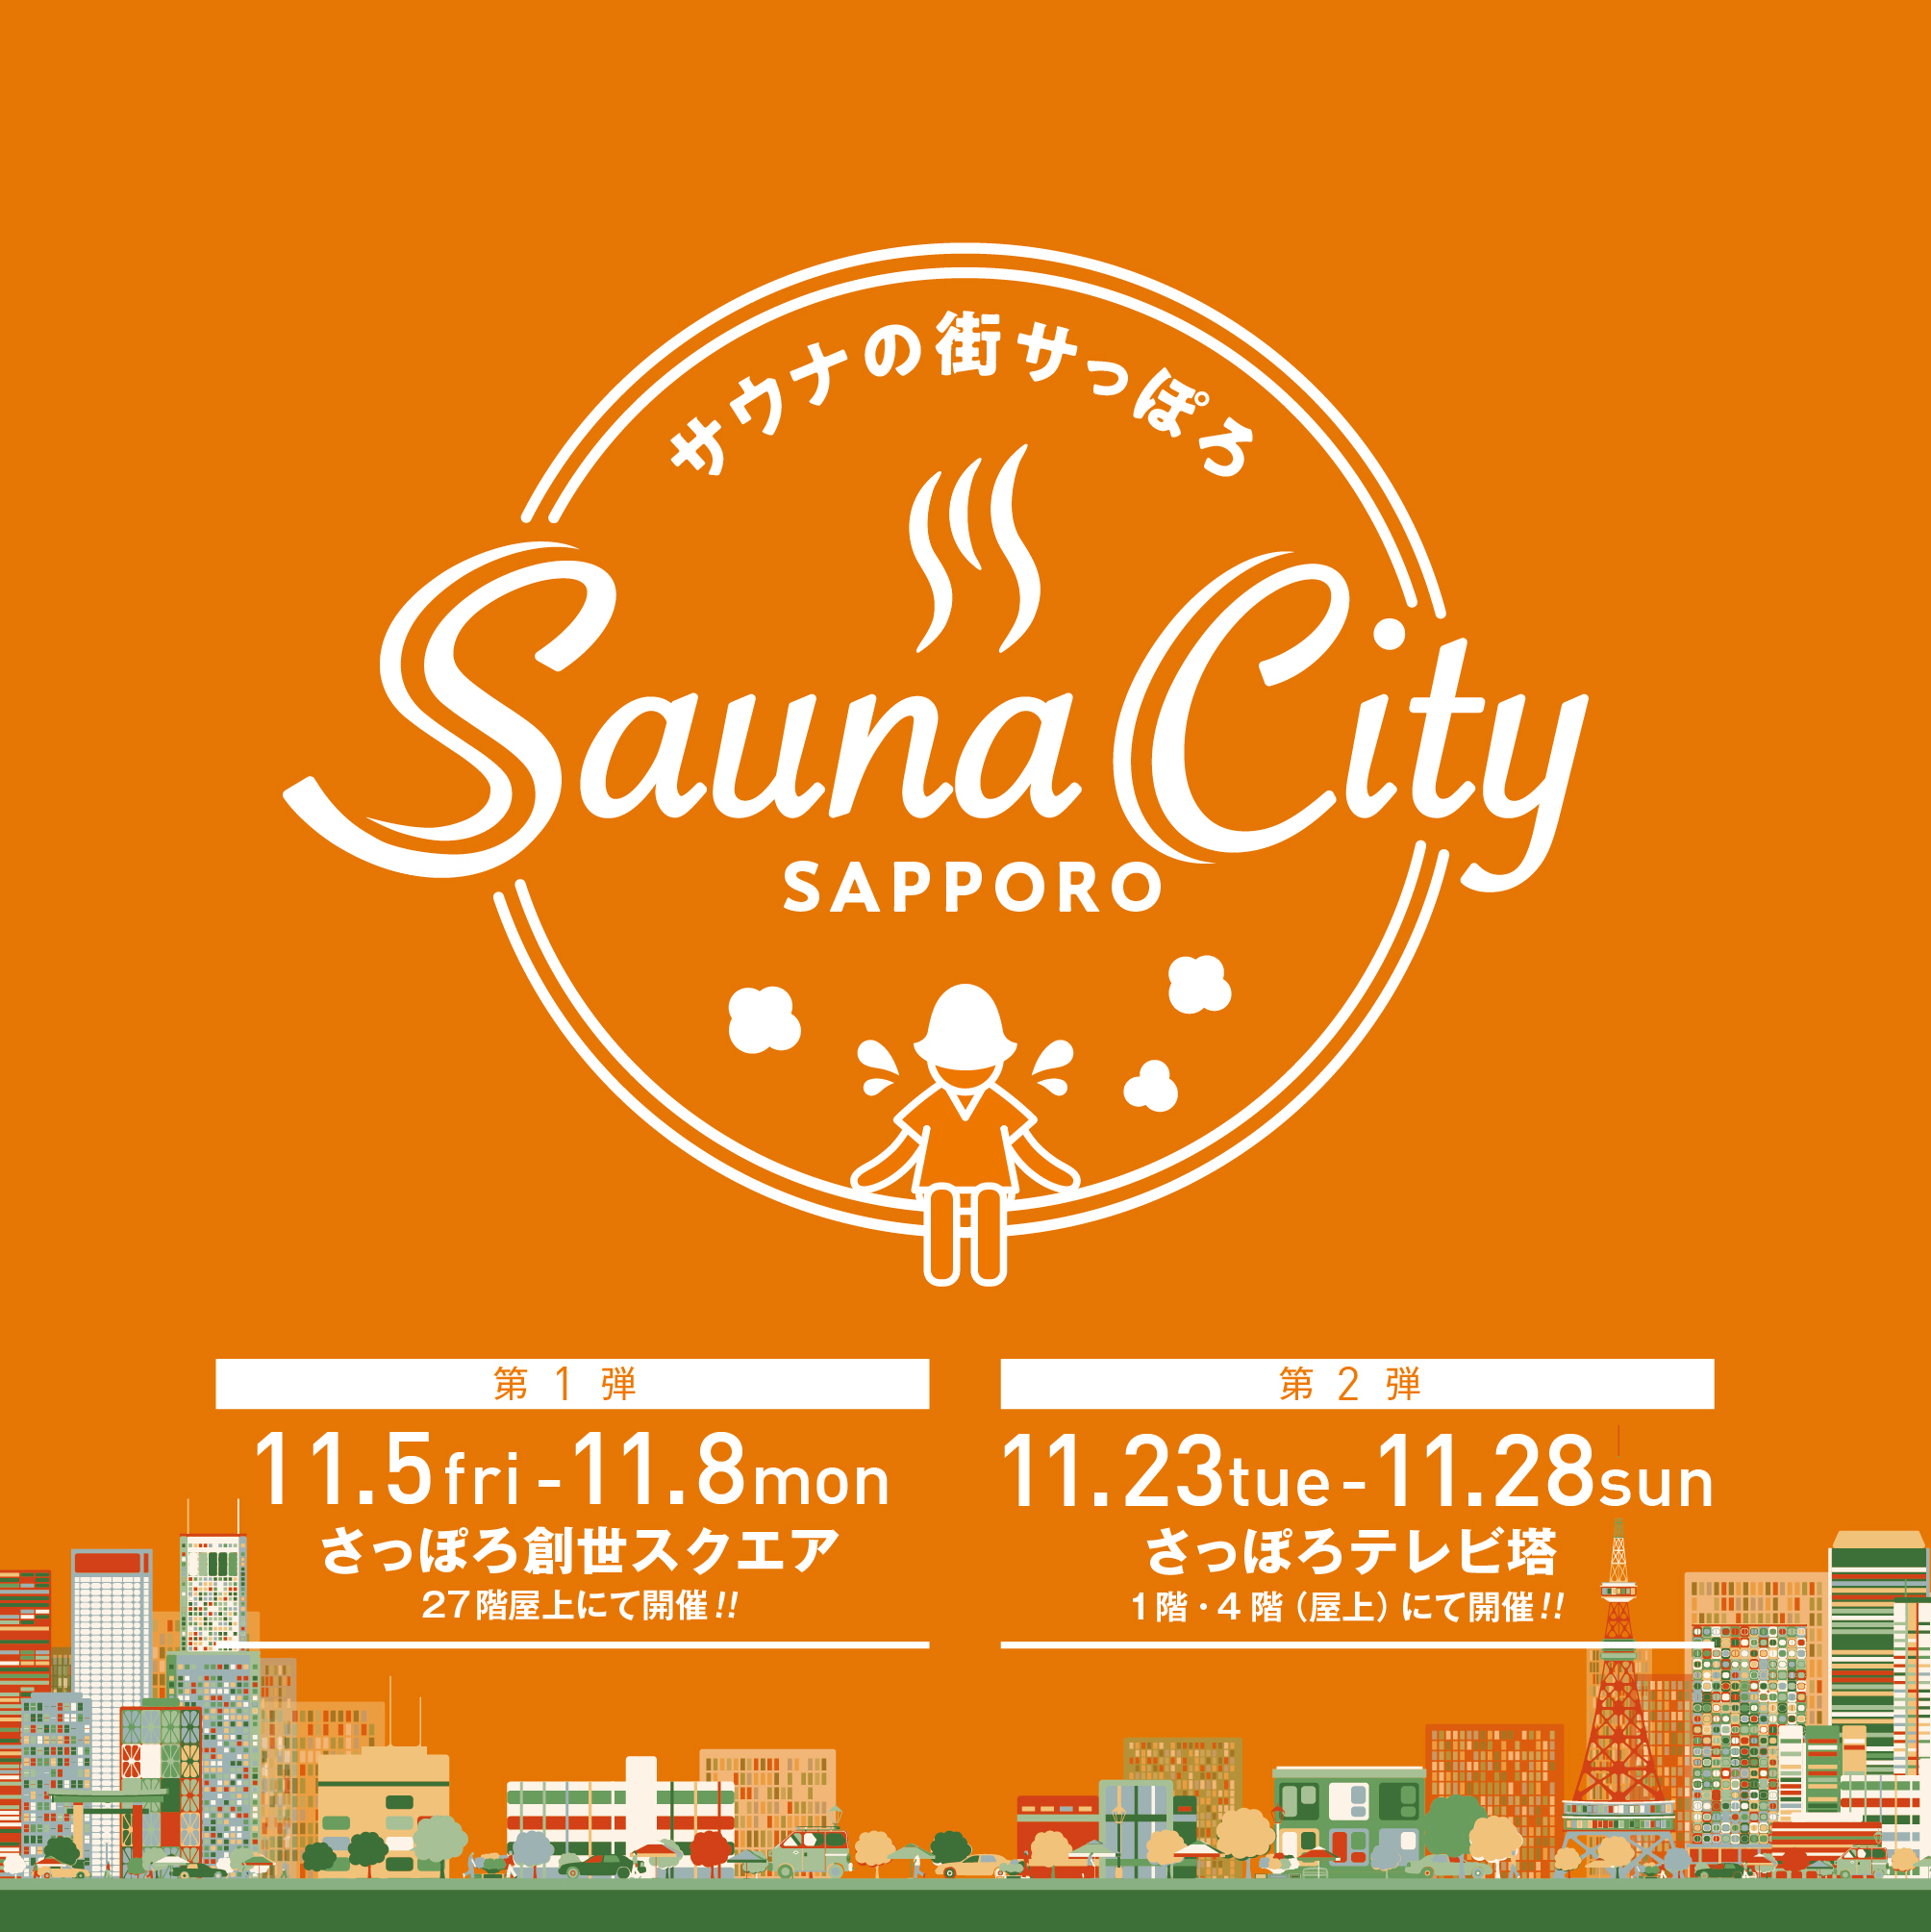 jogger Waardig Archaïsch Sauna City Sapporo～サウナの街サっぽろ～開催のお知らせ | 投稿 | ようこそさっぽろ